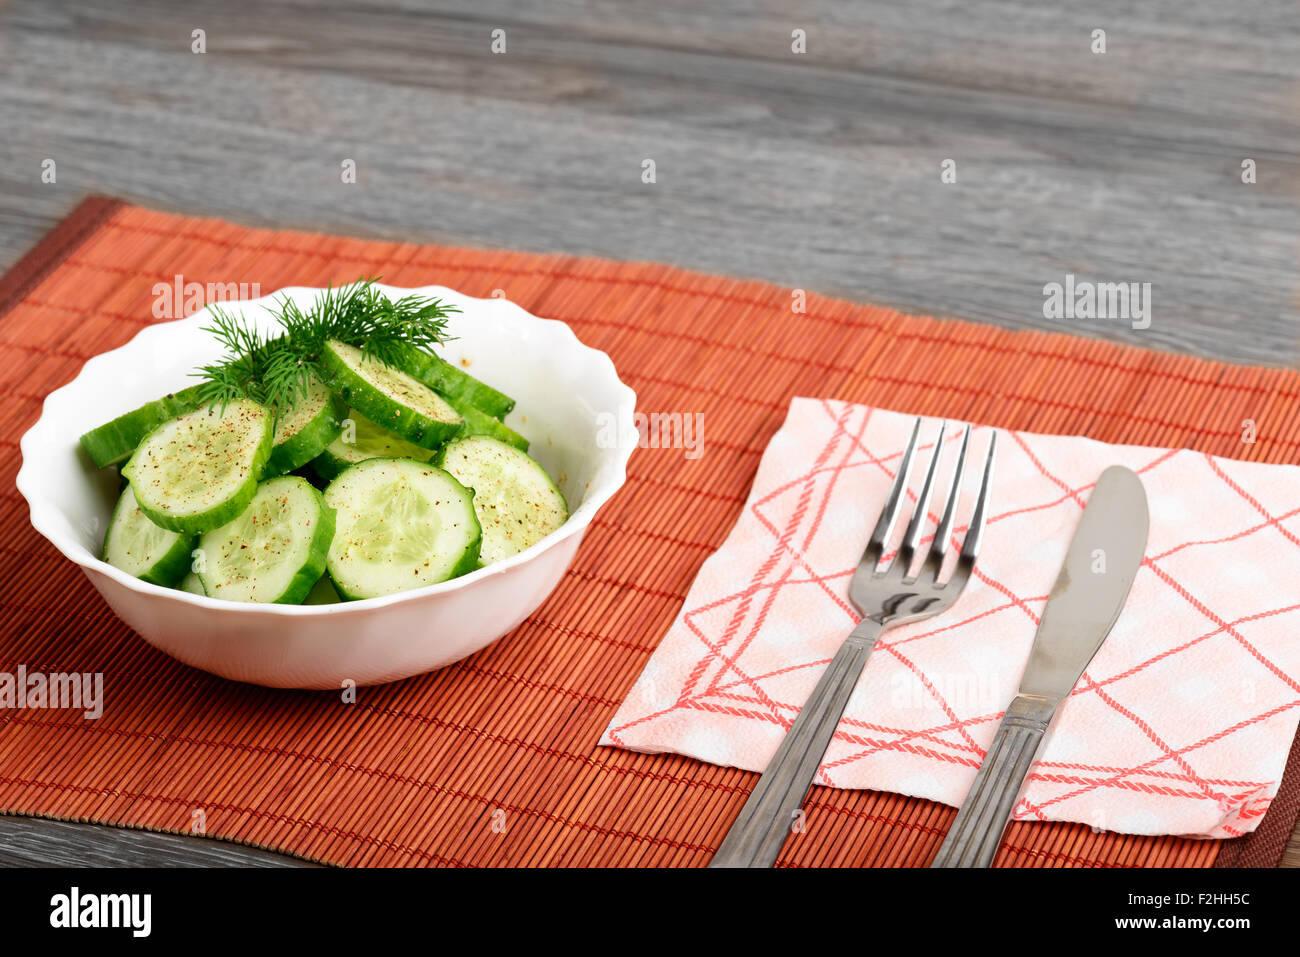 Salade de concombre en petits modération Banque D'Images